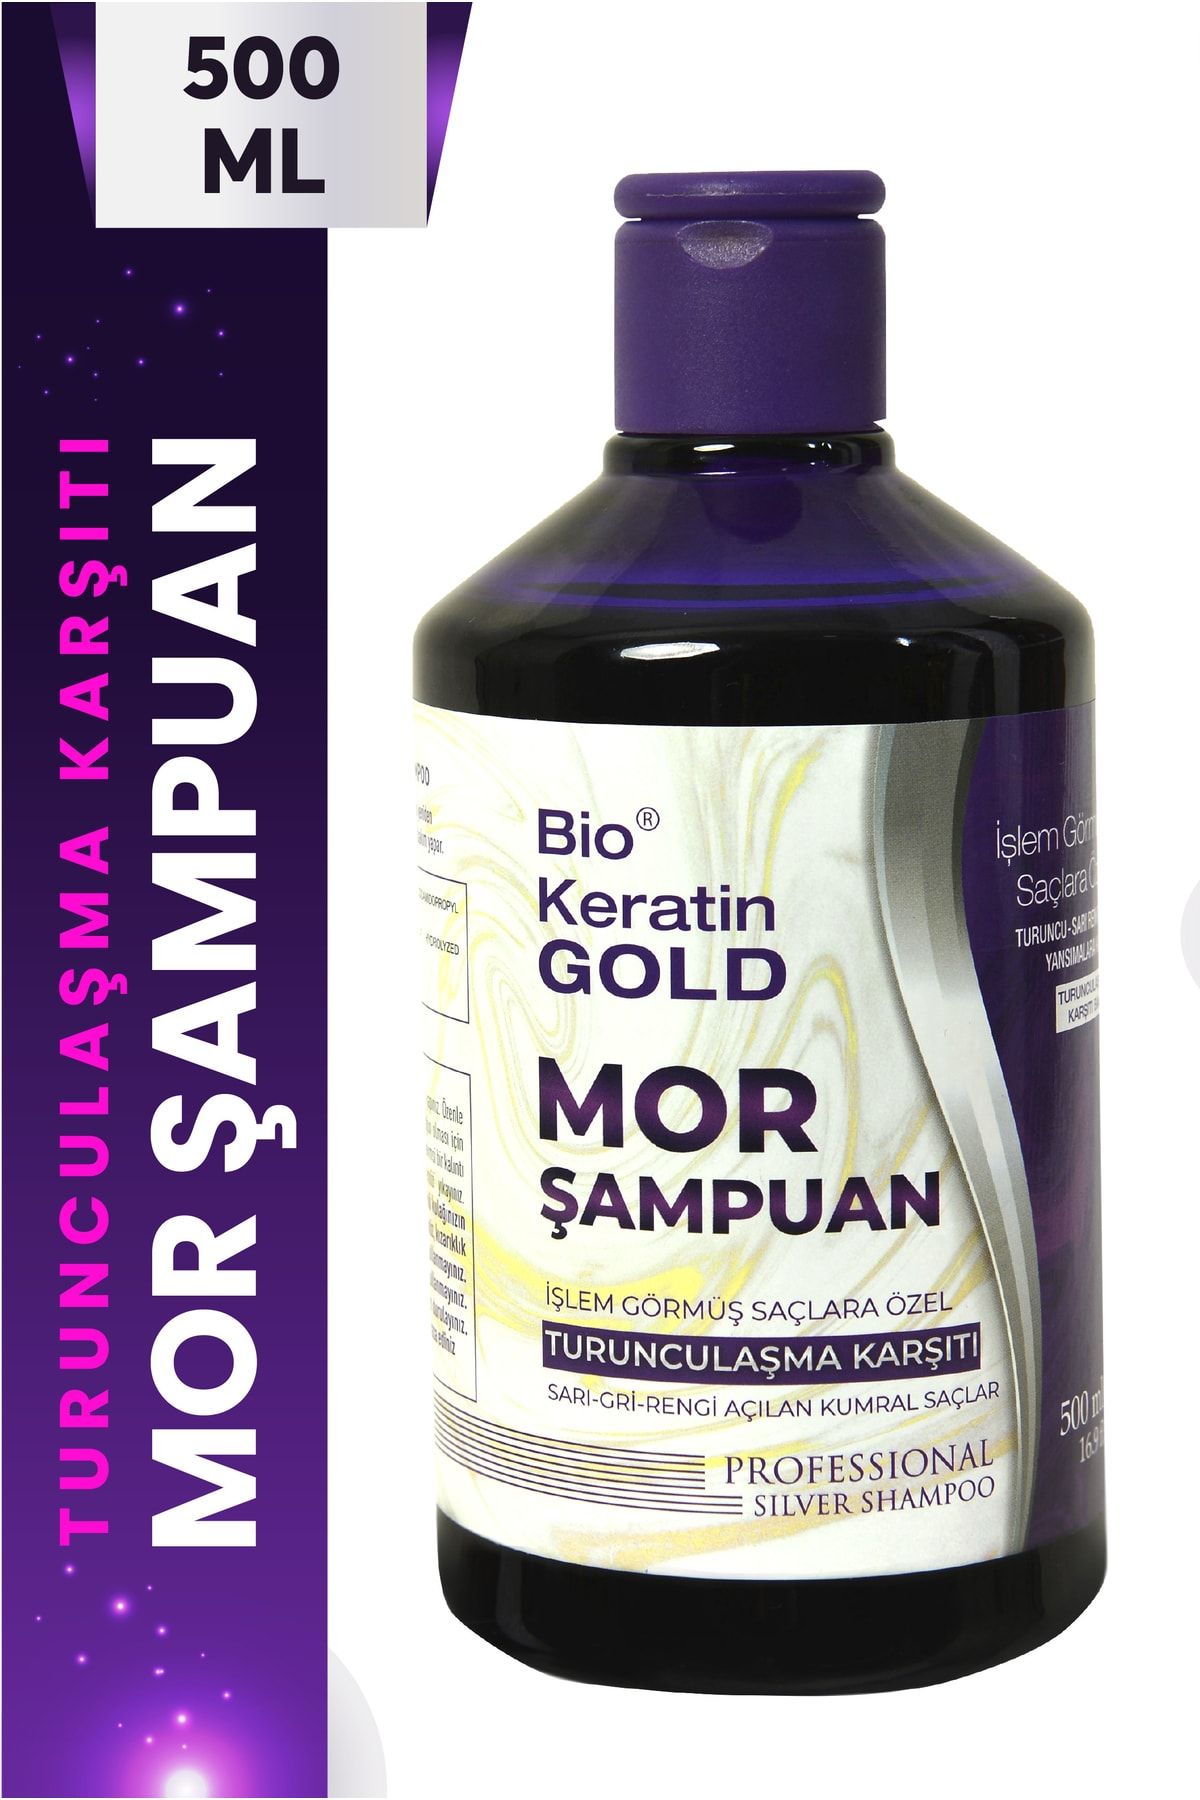 Bio Keratin Gold Turunculaşma Karşıtı Mor Şampuan 500 ml ..